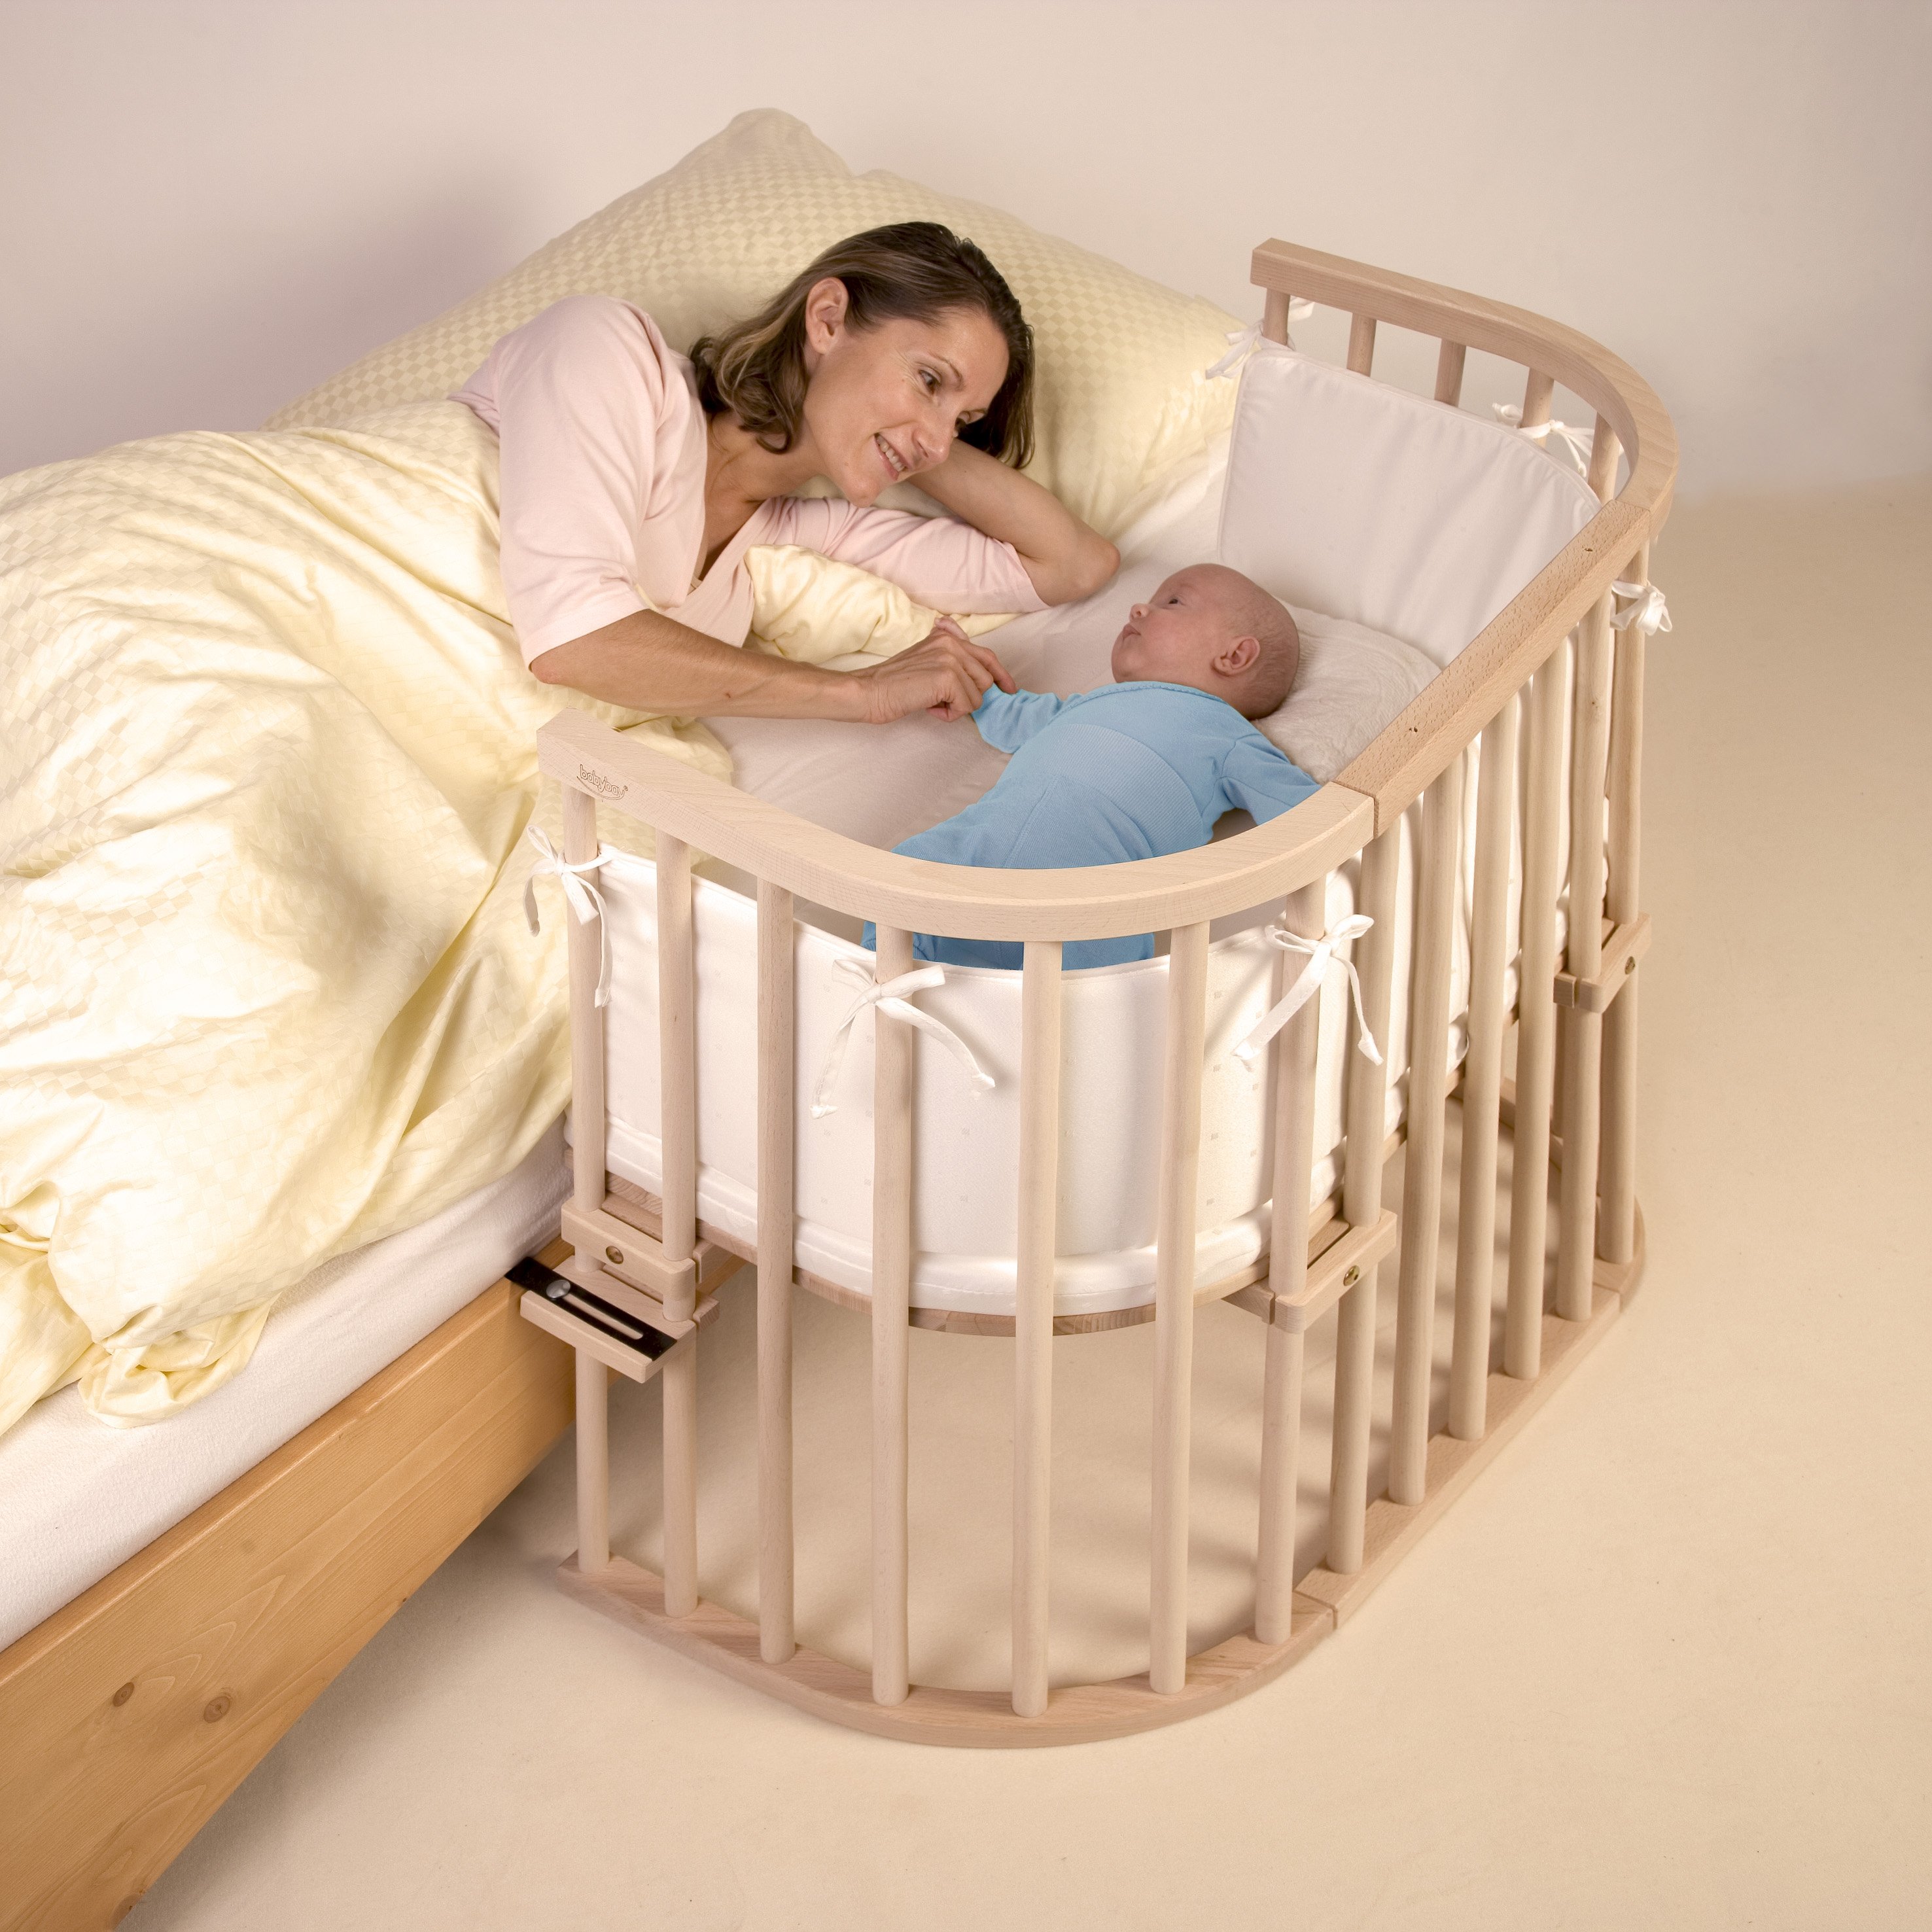 Спать в люльку. Кроватка babybay Original. Детская кровать babybay Tobi Original. Кровать детская Baby Crib. Babybay Maxi.